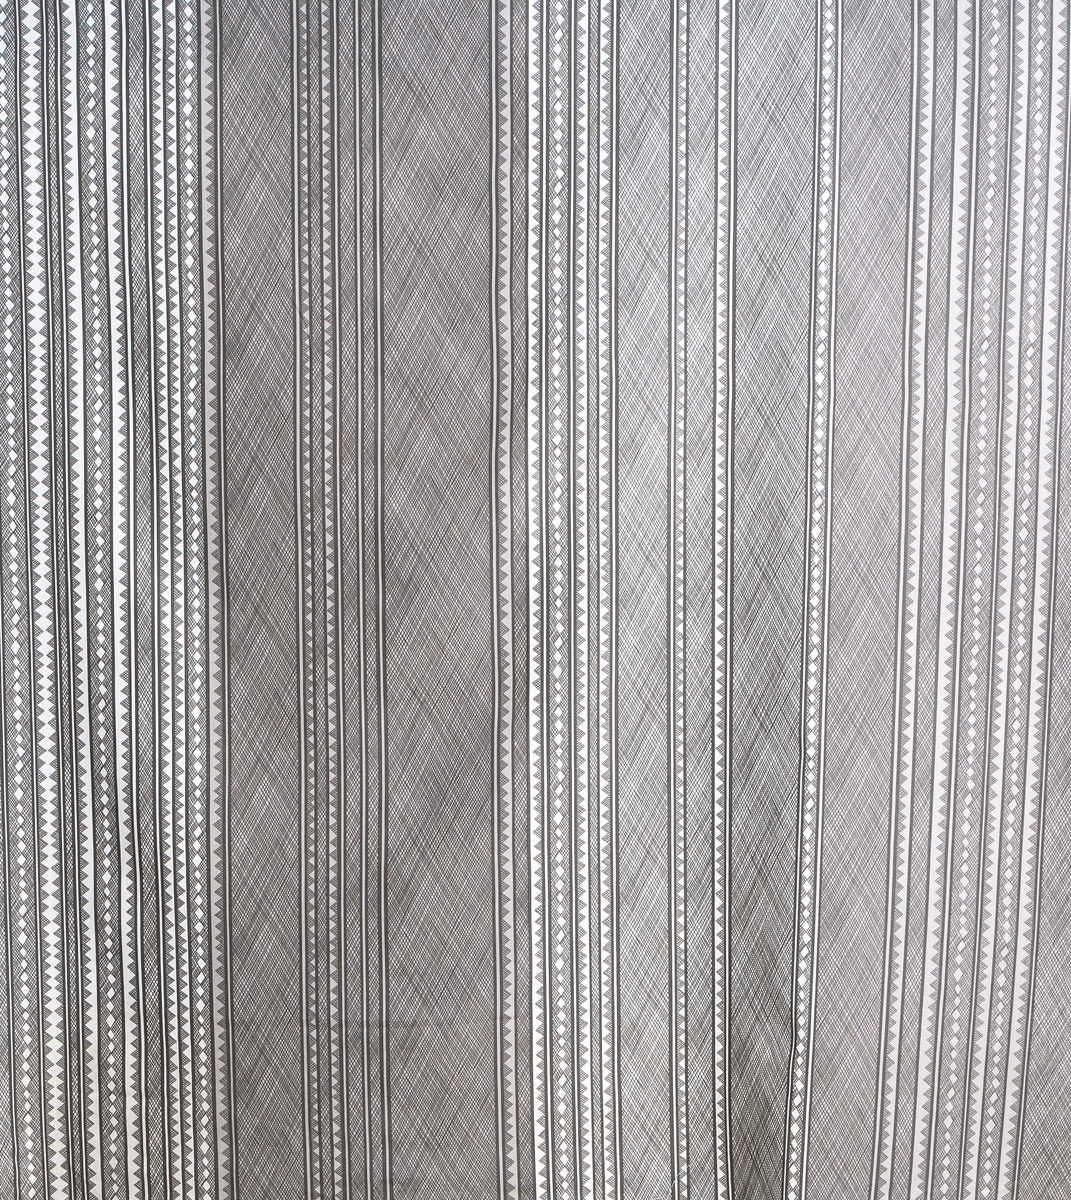 "Mimette", design Viola Gråsten
Art. nr. 23/337
Randigt mönster med rutiga diagonala partier som hela ränder och spetsar, med och utan bottenfärg.